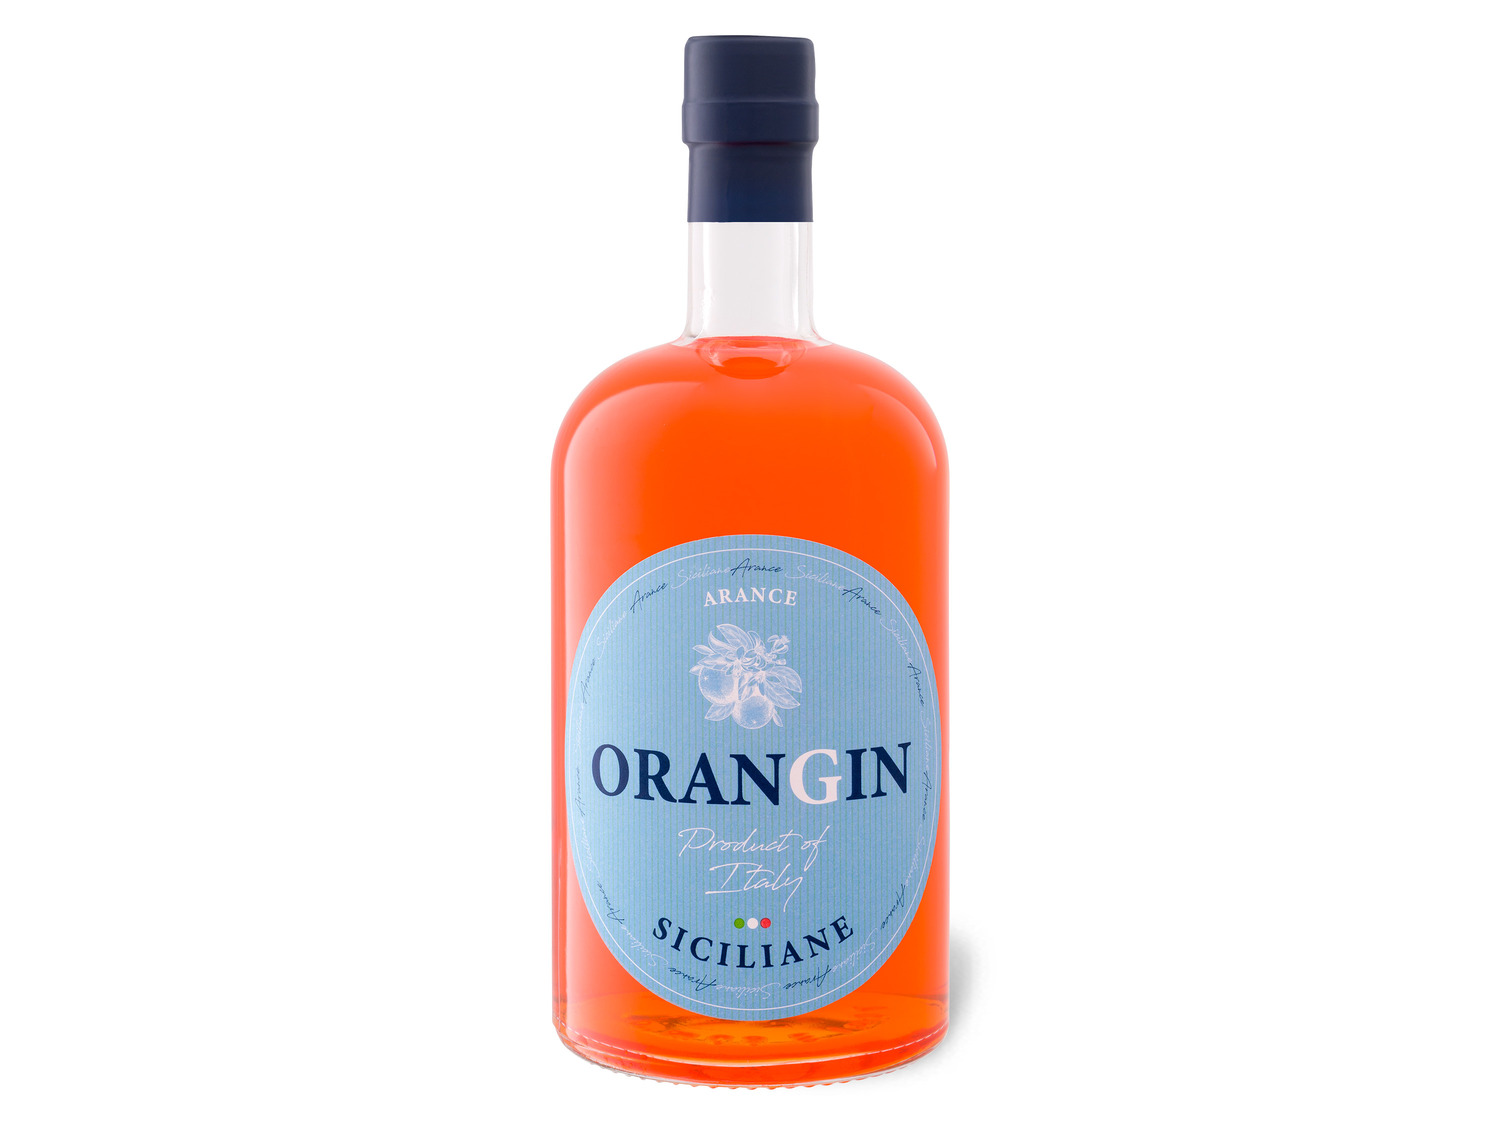 OranGin Siciliane 40% Vol online LIDL | kaufen